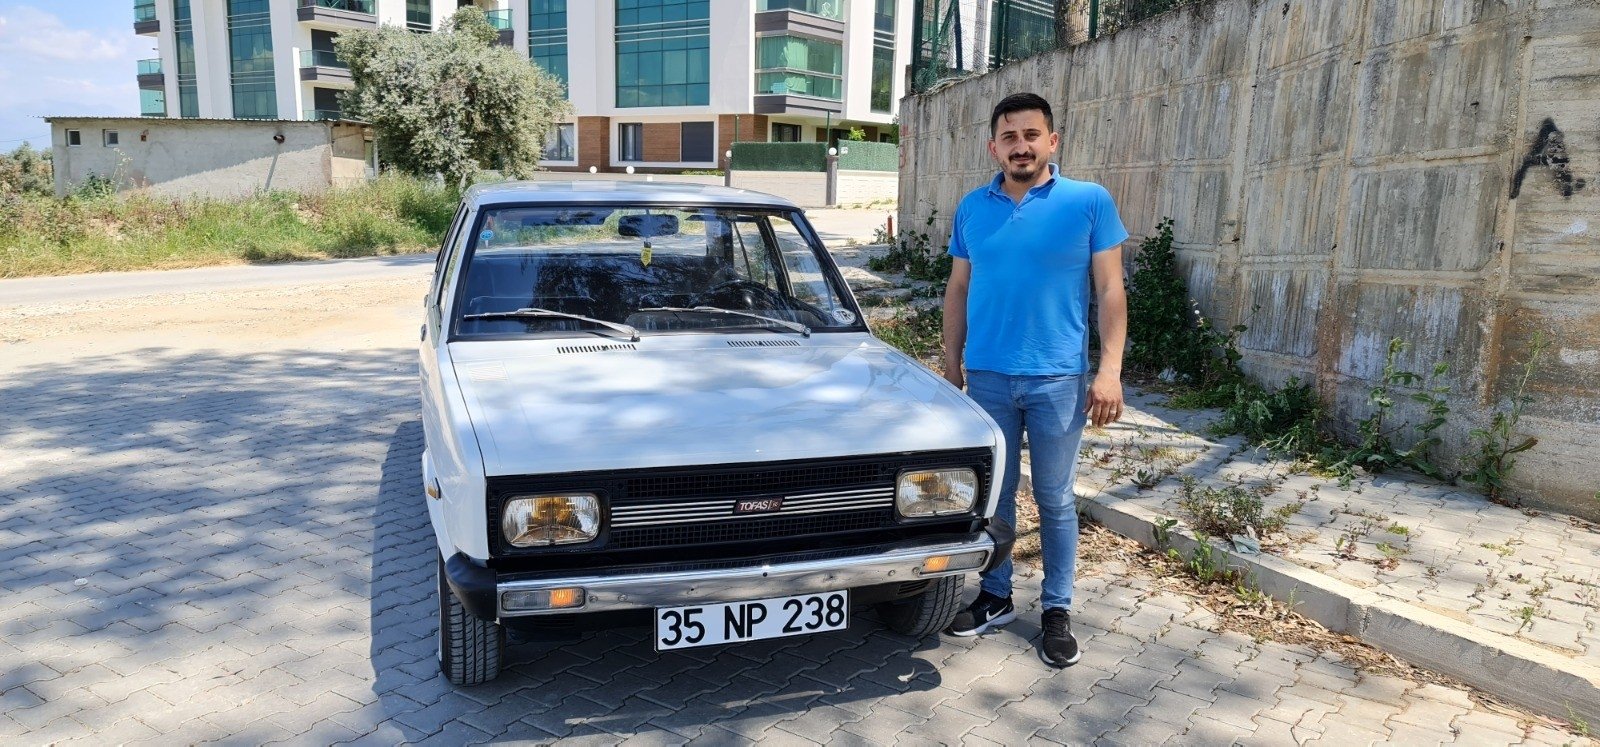 Klasik otomobil tutkunu Hasan Karadisoğlu, Fiat Tofaş Murat 131 'Mirafiori' ile Türkiye'nin batısında İzmir, tertemiz korunmuş 1979, 6 Mayıs 2021. (IHA Fotoğrafı)